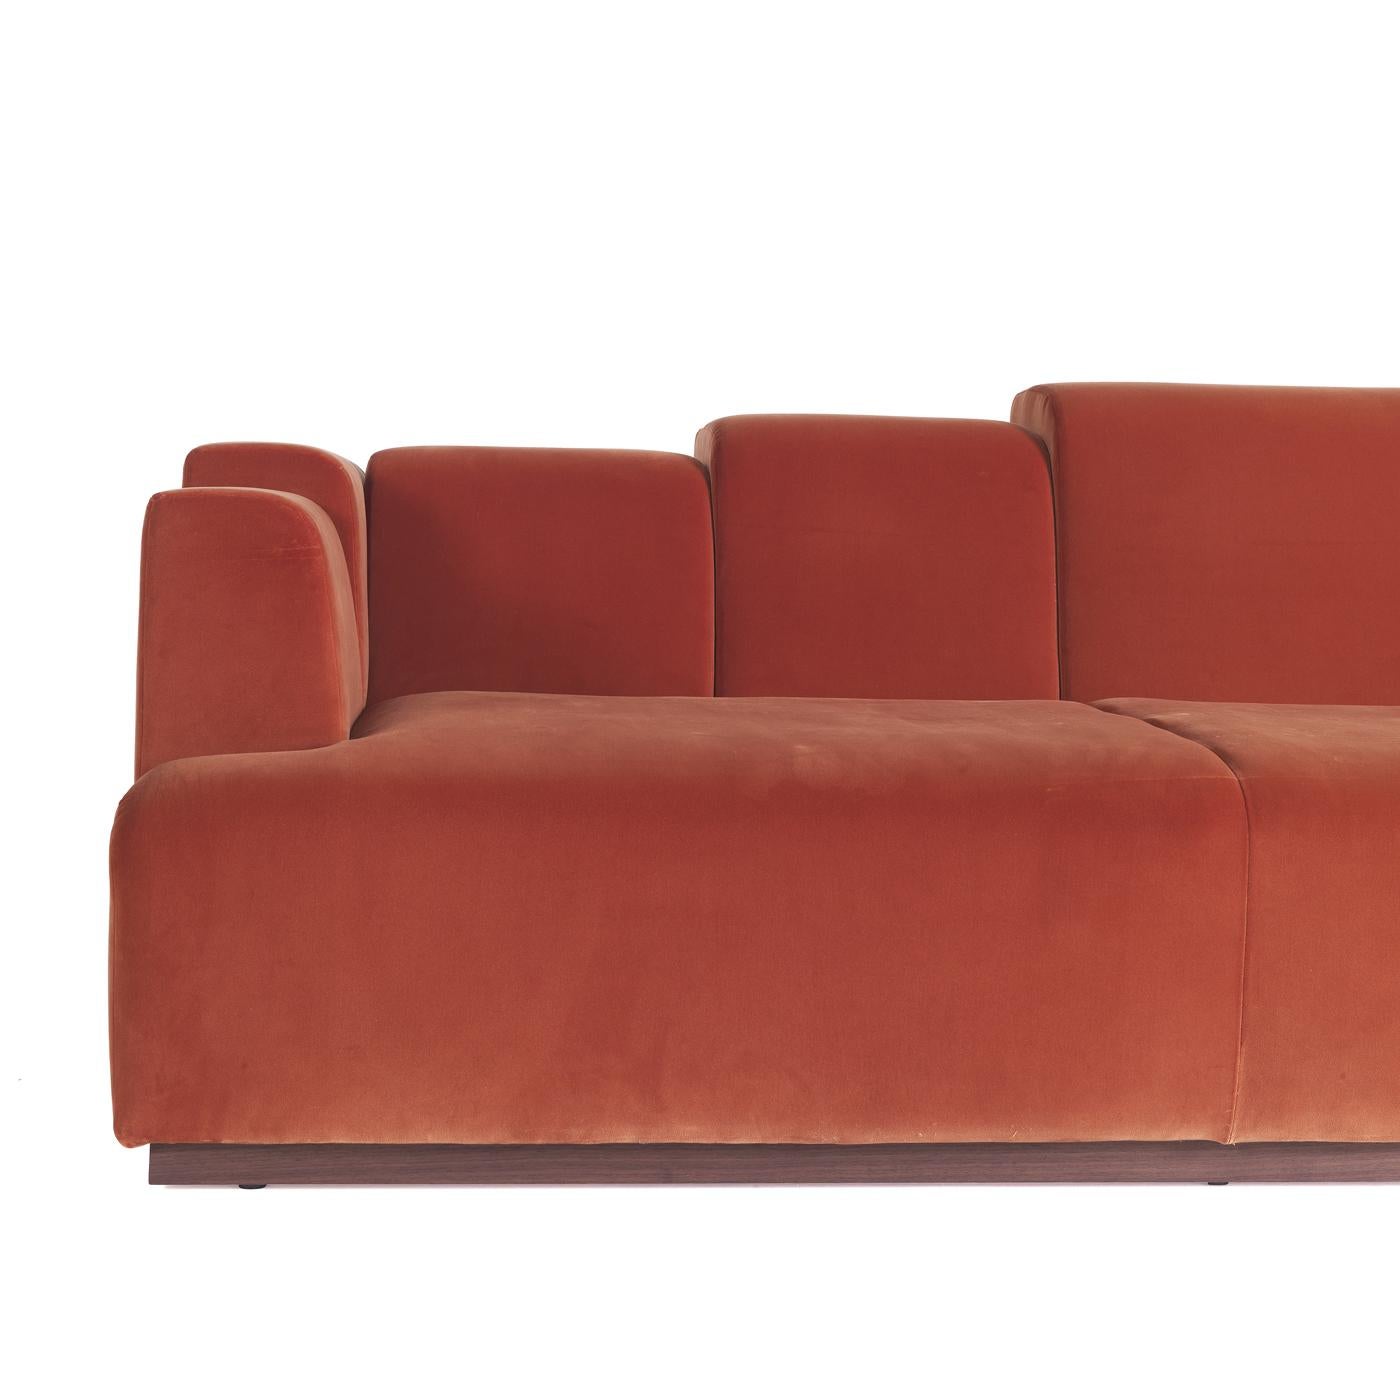 Inspiriert vom Stil der 1980er Jahre, ist dieses auffällige Sofa ein einzigartiges Stück, das in jedem Wohnzimmer für Aufsehen sorgen wird. Er ist ziegelrot und zeichnet sich durch eine einzigartige Rückseite mit unterschiedlich großen Abschnitten